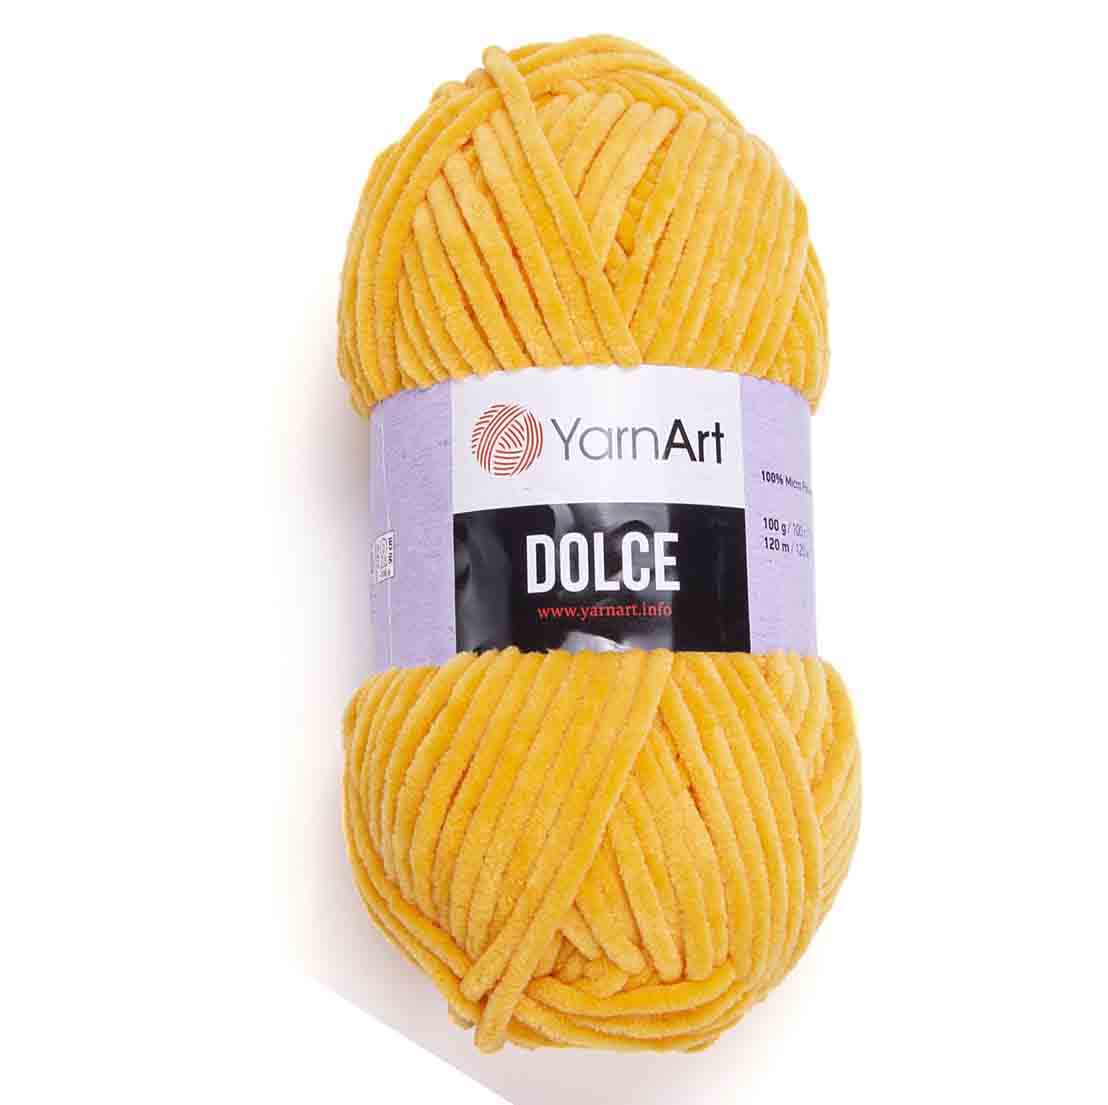 YarnArt Dolce 853 ярко-желтый